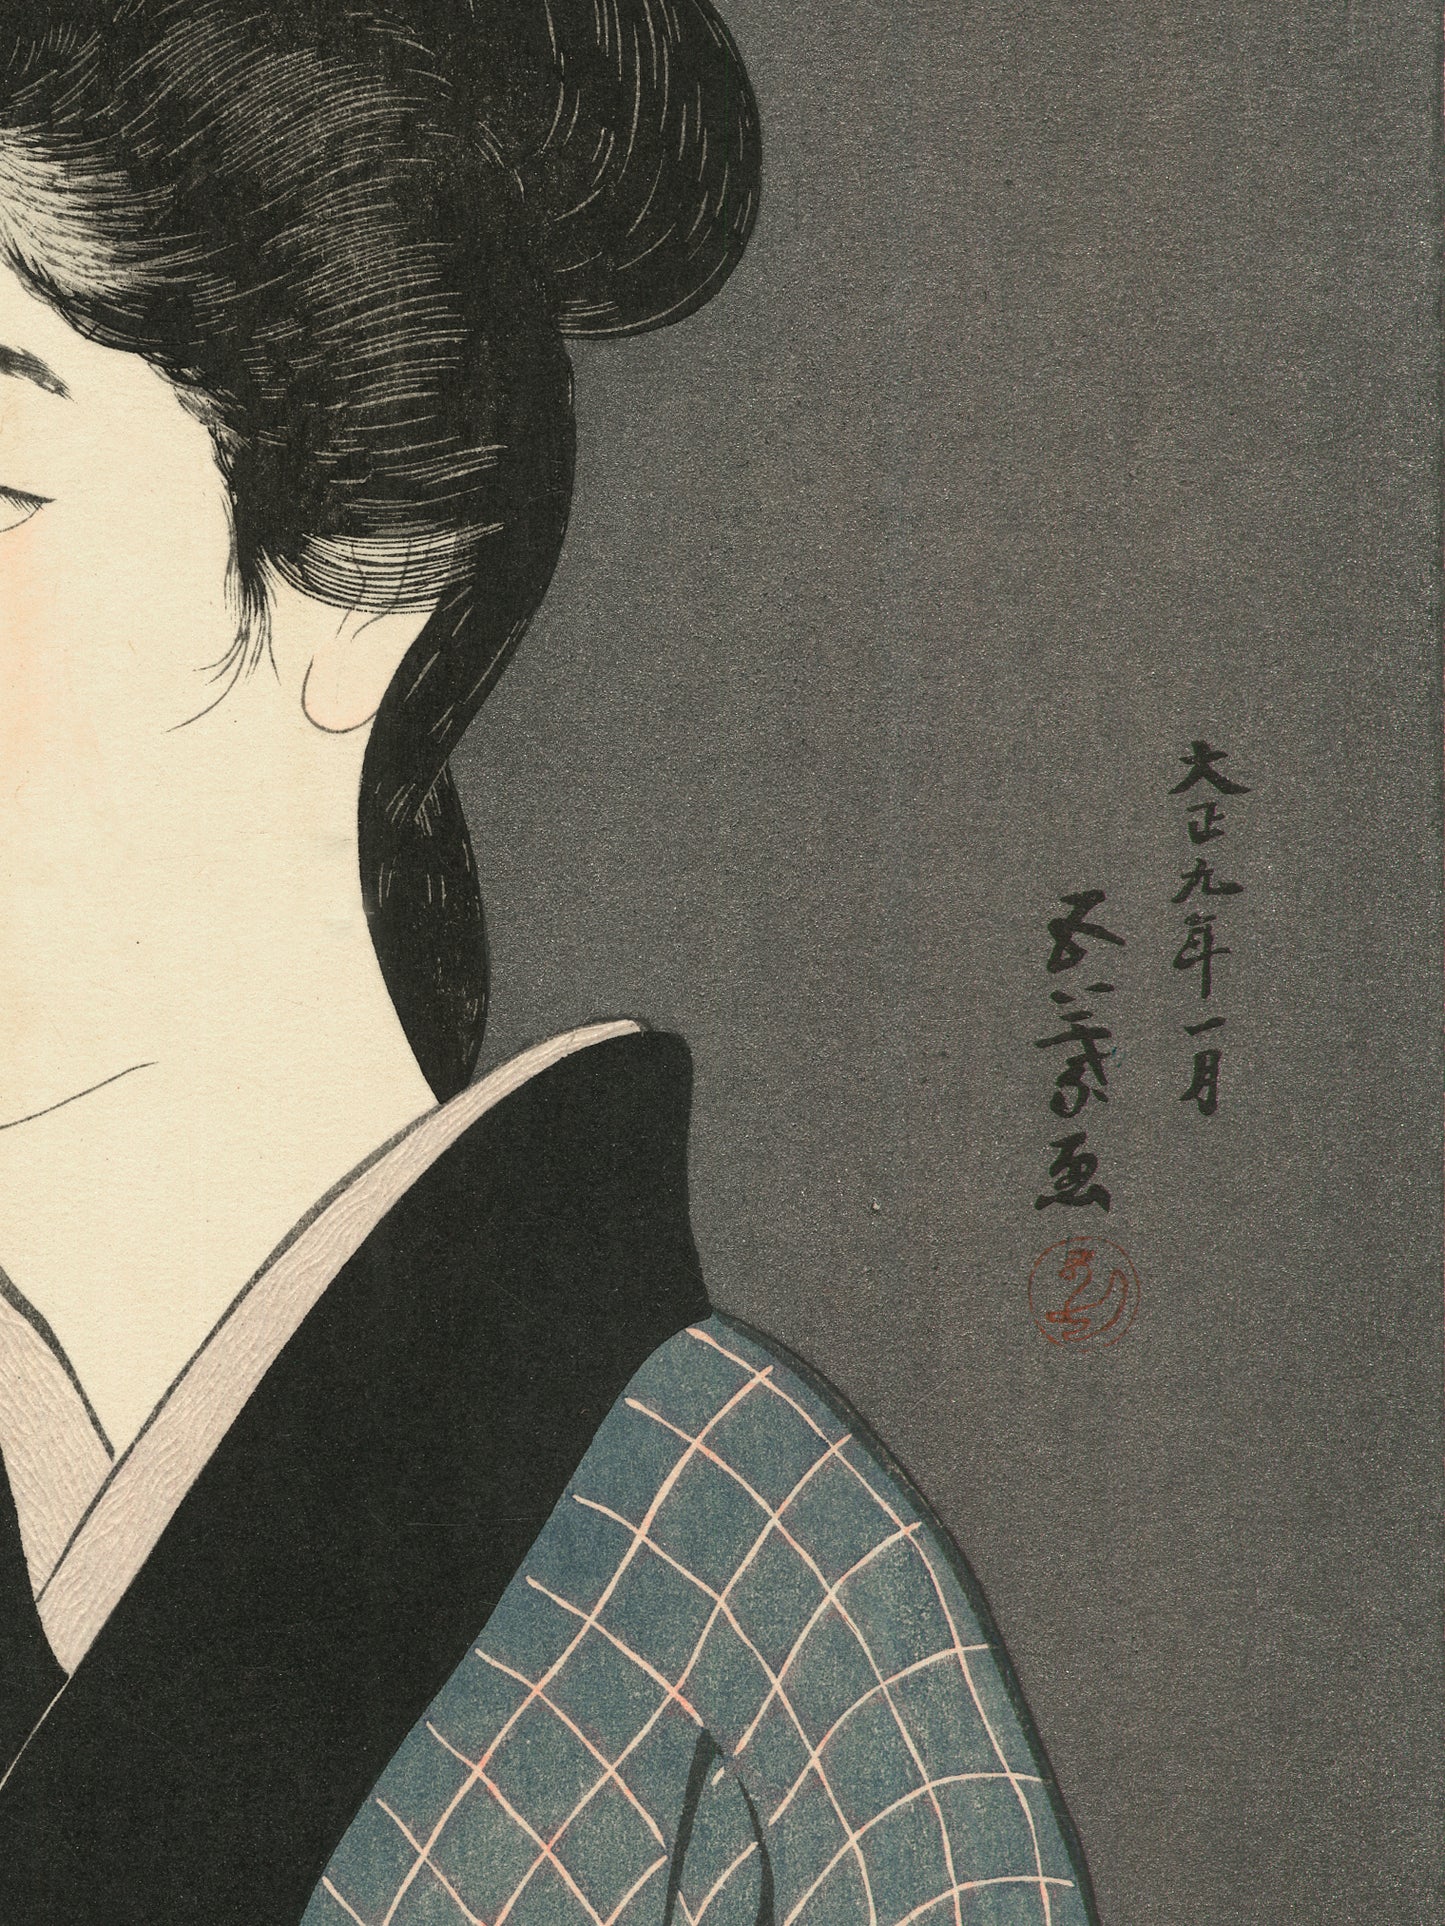 Estampes Japonaise détail de l’estampe sur la nuque dégagée de la femme 